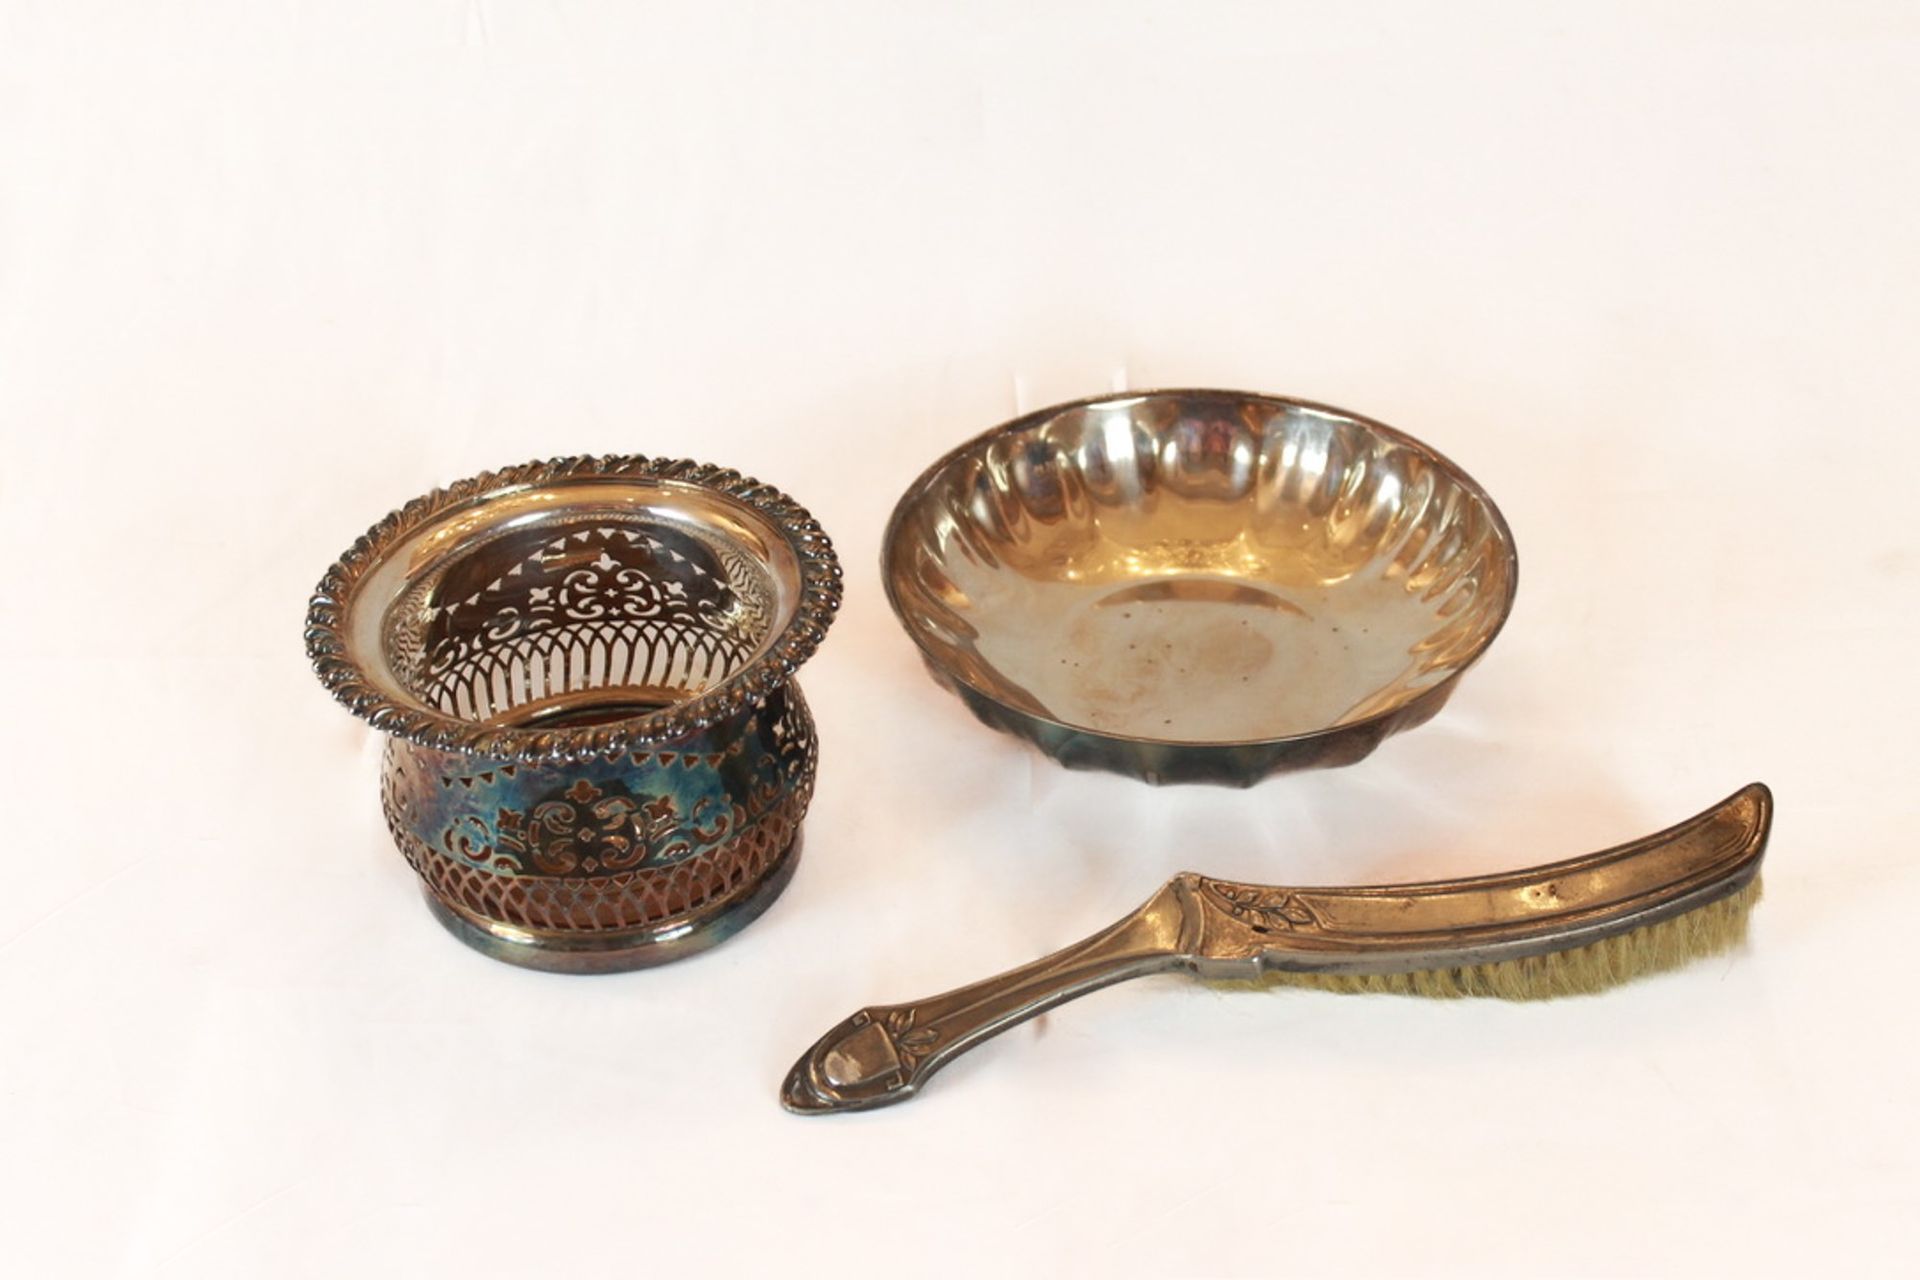 Lot of 3 items 不同的形状和大小
银色金属，由以下部分组成：一个瓶架，一个中心盆和一个桌刷。